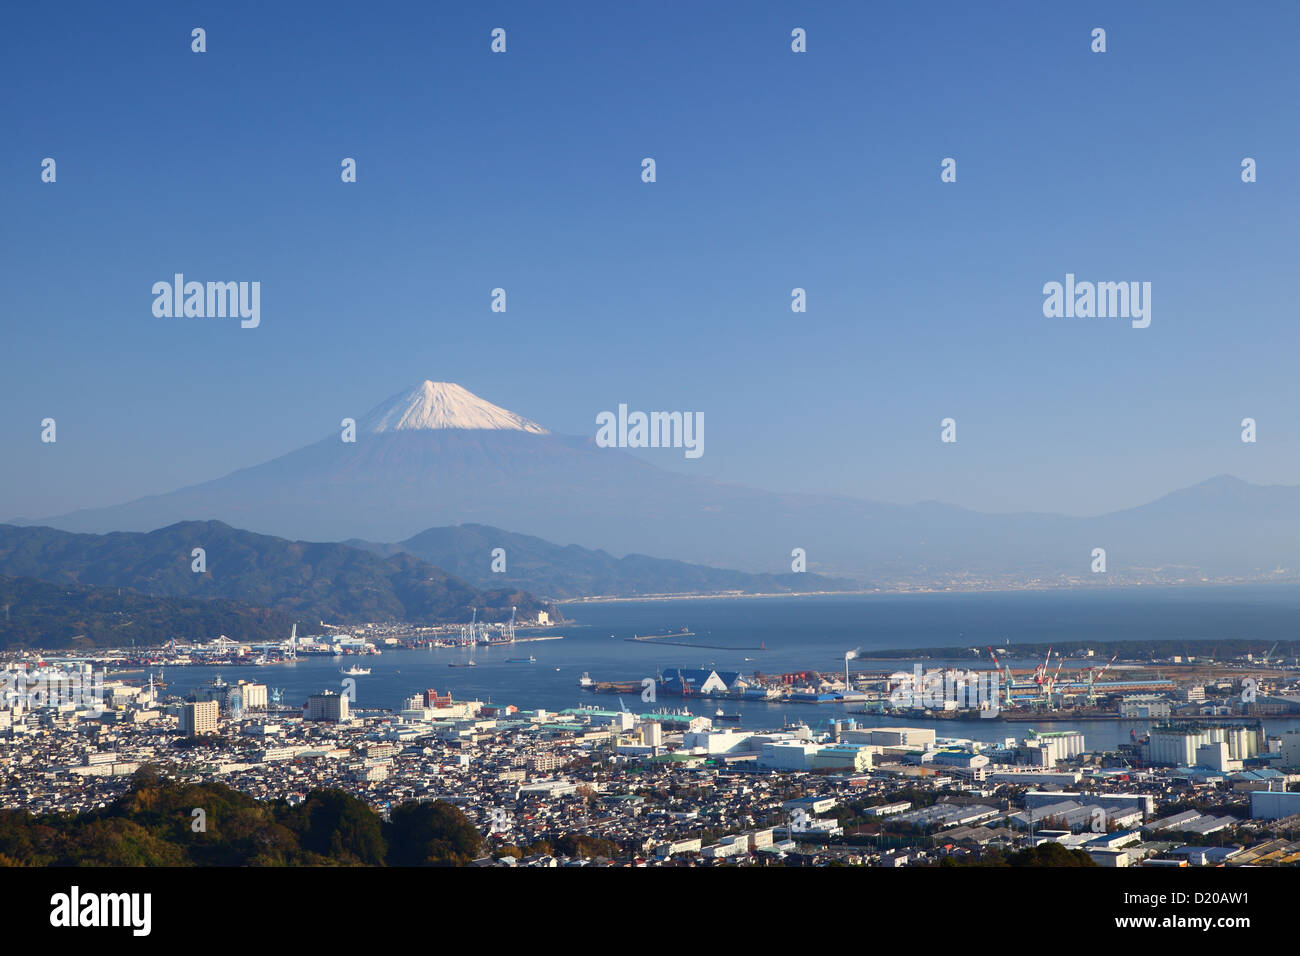 Mt. Fuji and Shimizu Port, Shizuoka, Japan Stock Photo